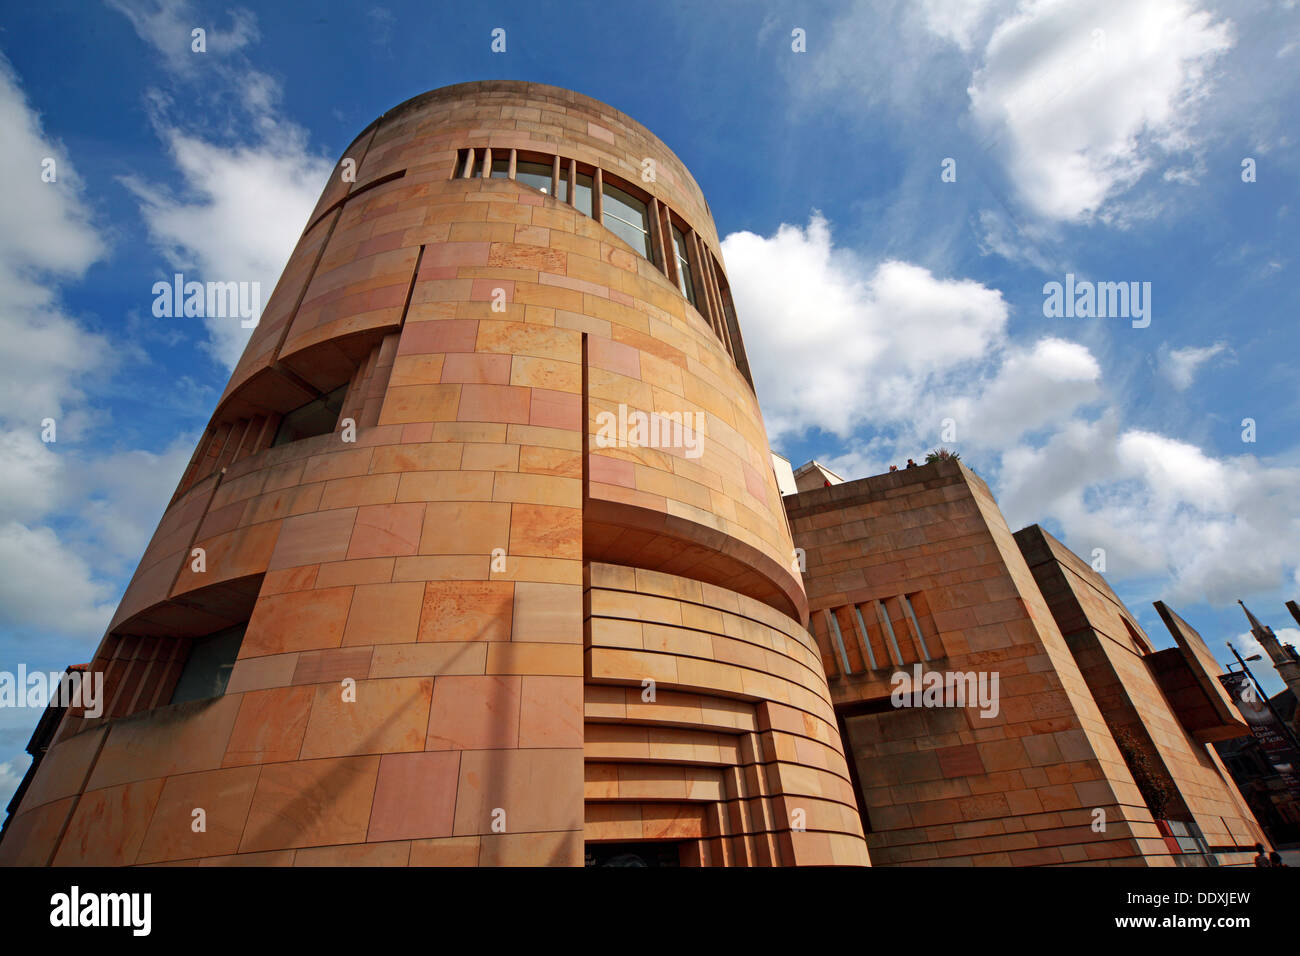 Musée national d'Écosse, nouvelle architecture extérieure, avec ciel bleu d'été, Chambers St, ville d'Édimbourg, Écosse, Royaume-Uni, EH1 1JF Banque D'Images